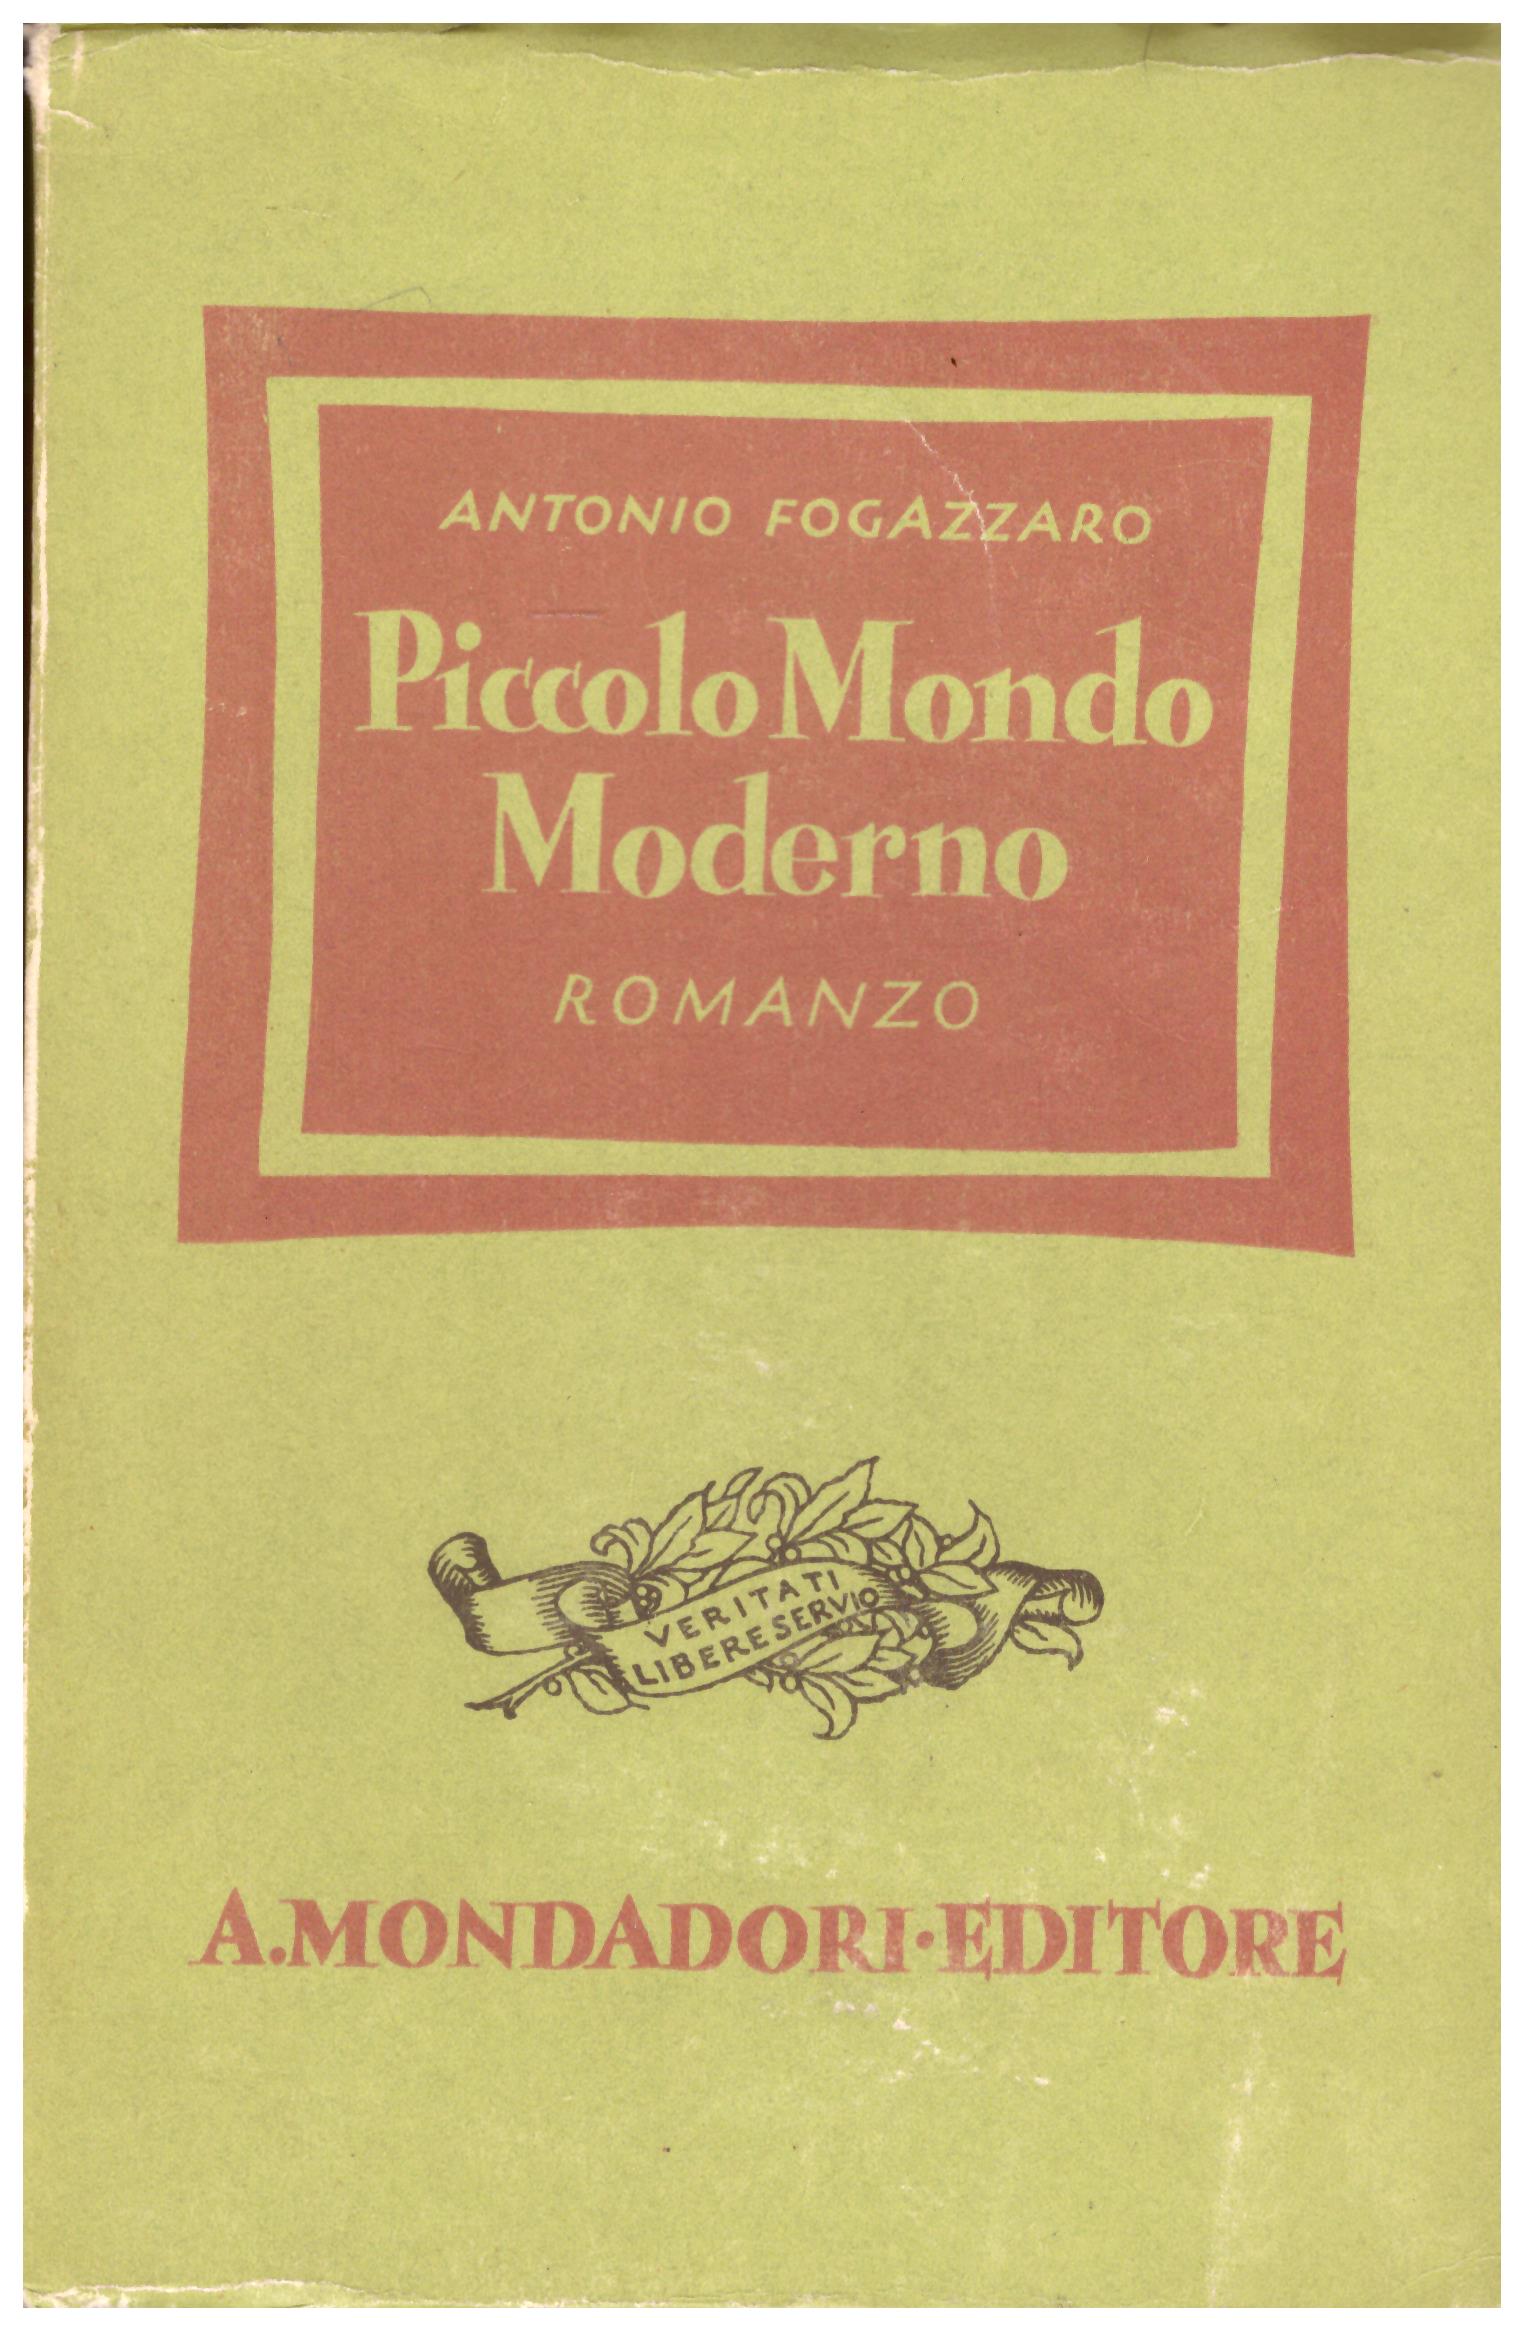 Titolo: Piccolo mondo moderno Autore : Antonio Fogazzaro Editore: Mondadori 1941